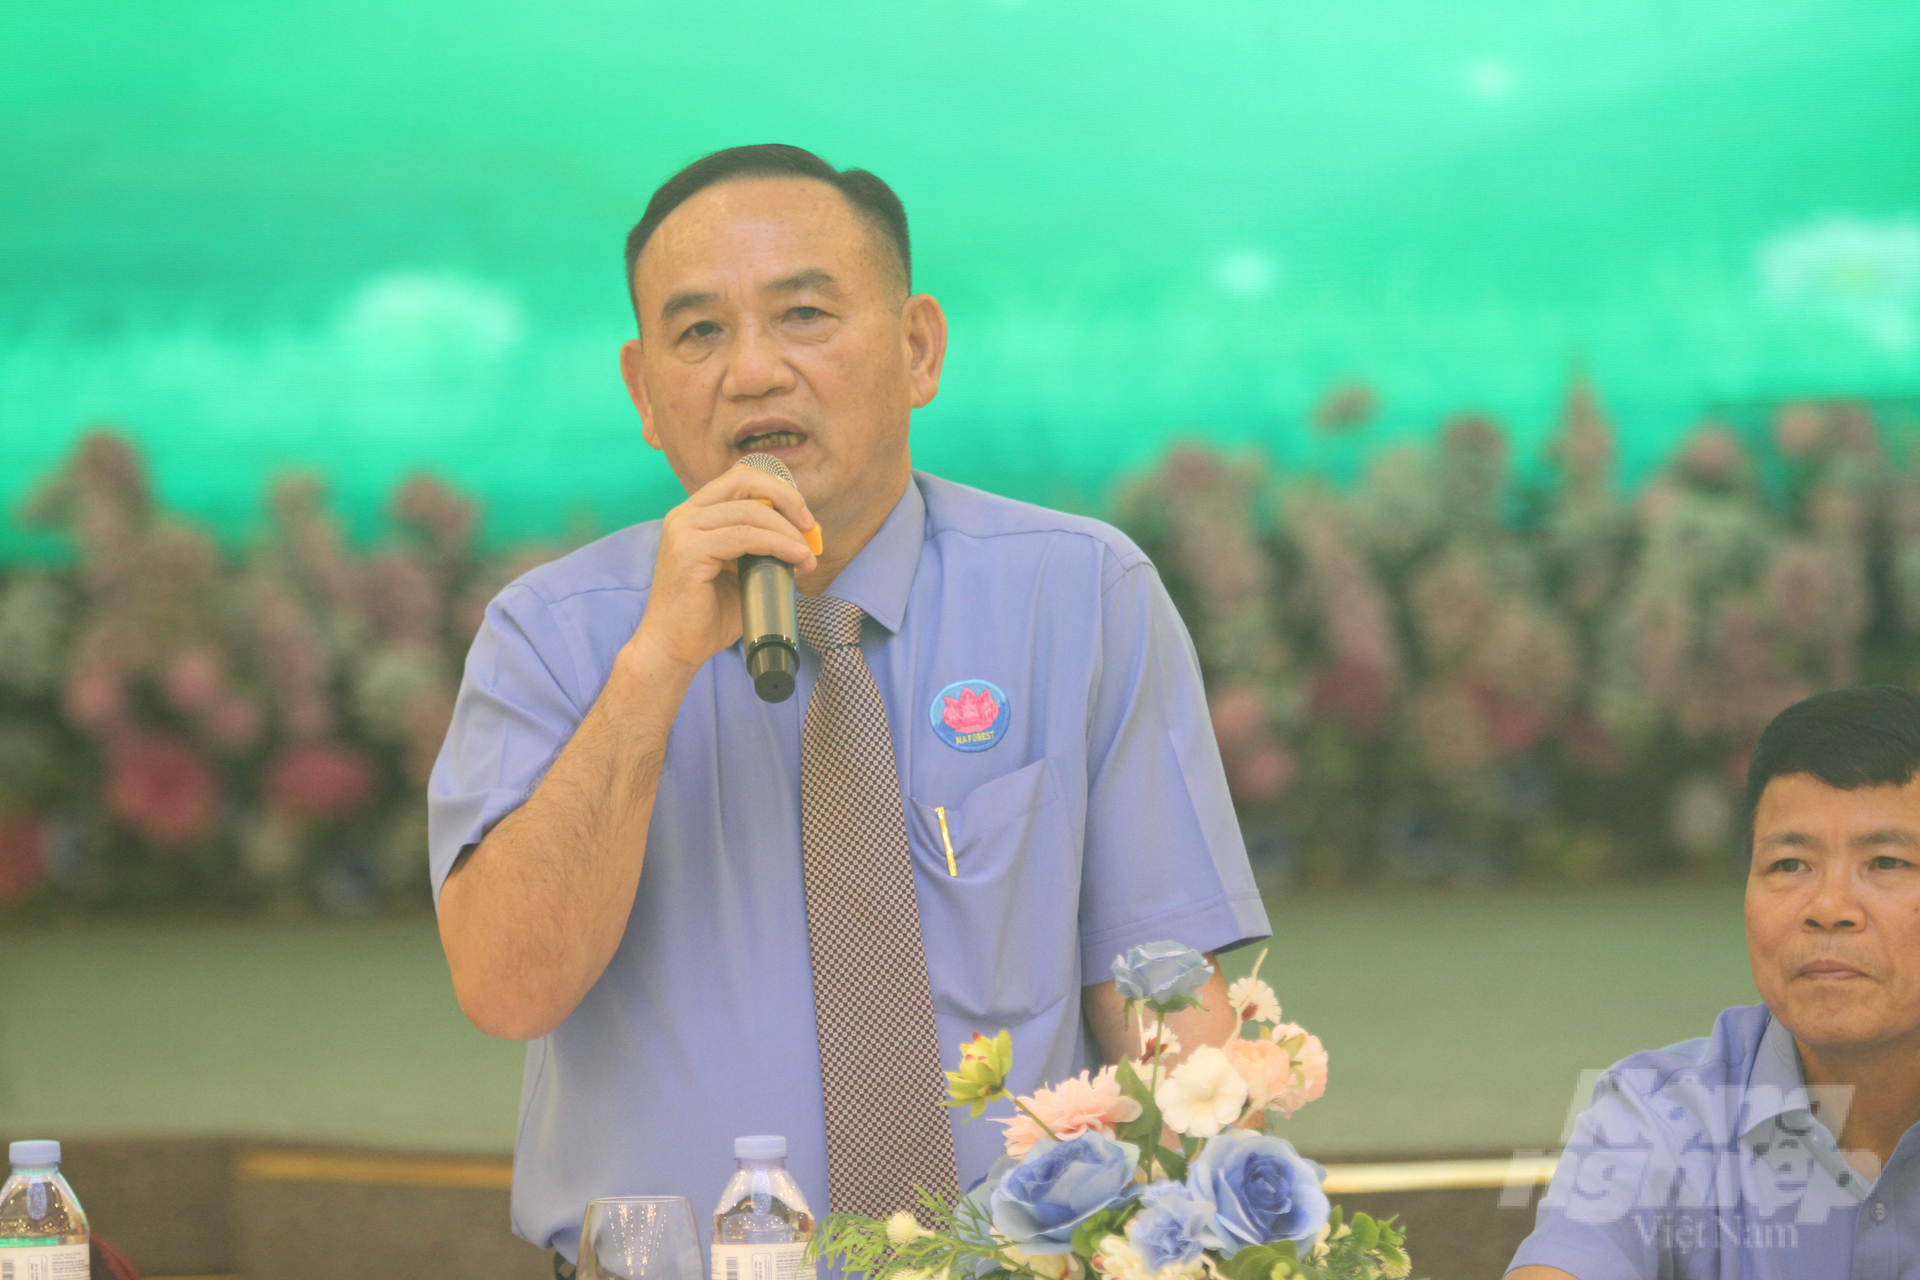 Sau kiện toàn, ông Trần Quang Luận được bầu làm Chủ tịch Hiệp hội Chế biến gỗ và lâm sản ngoài gỗ tỉnh Nghệ An. Ảnh: Quốc Toản.